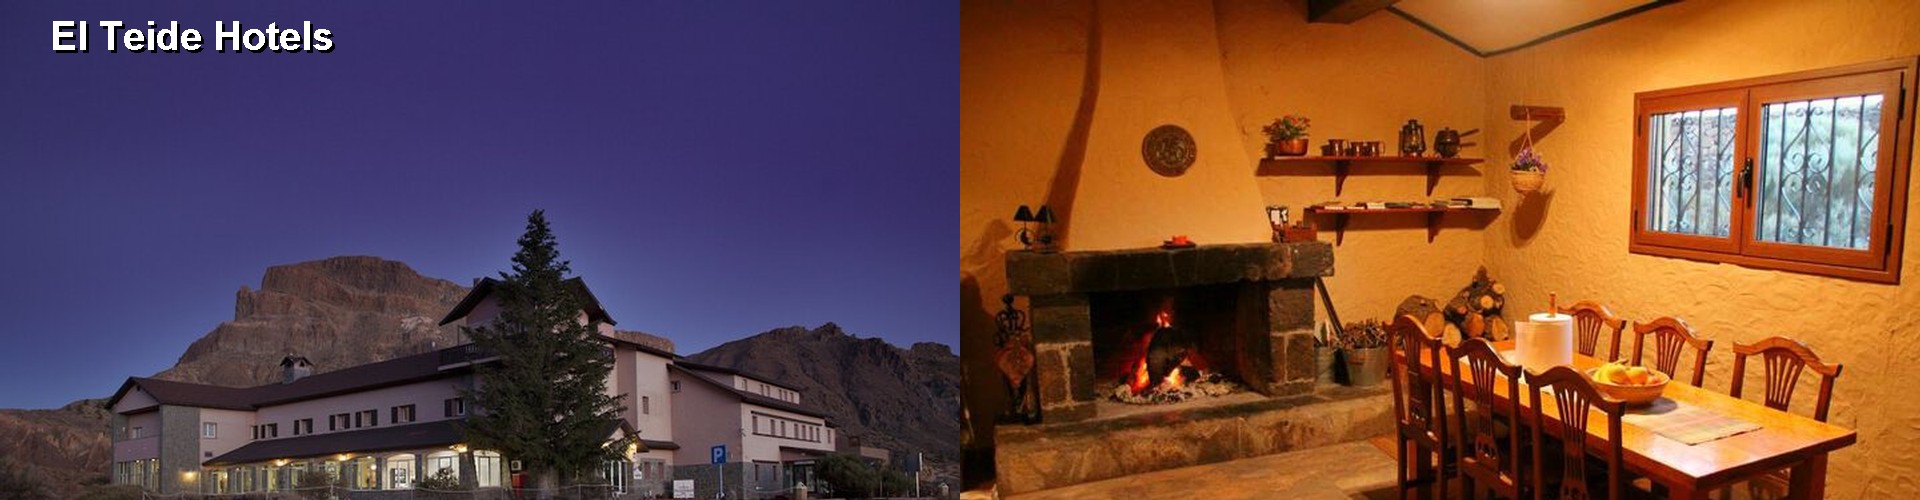 5 Best Hotels near El Teide